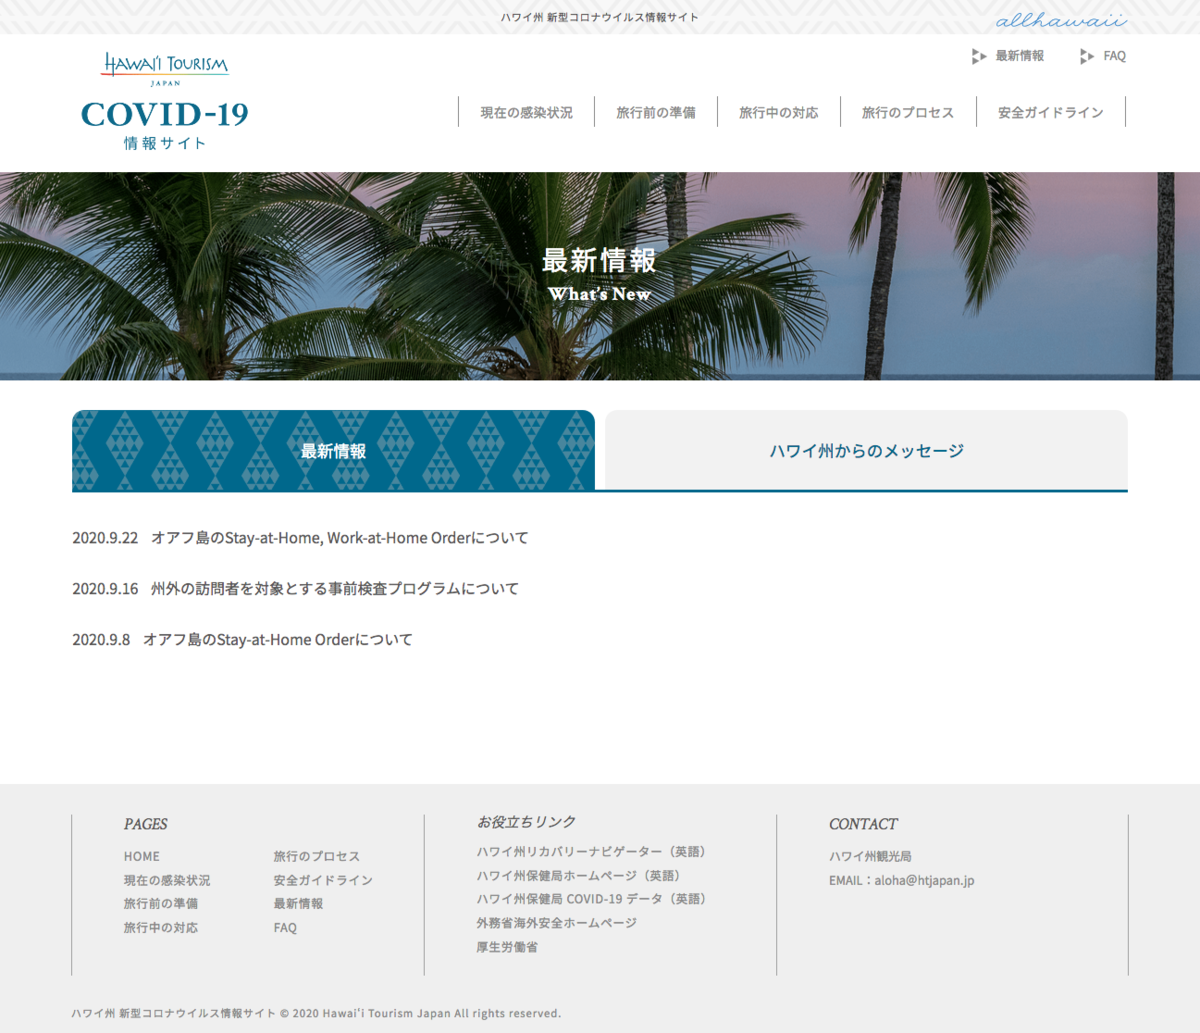 ハワイ州観光局、観光再開に向けて“新型コロナウイルス情報サイト”を開設。対策動画も公開